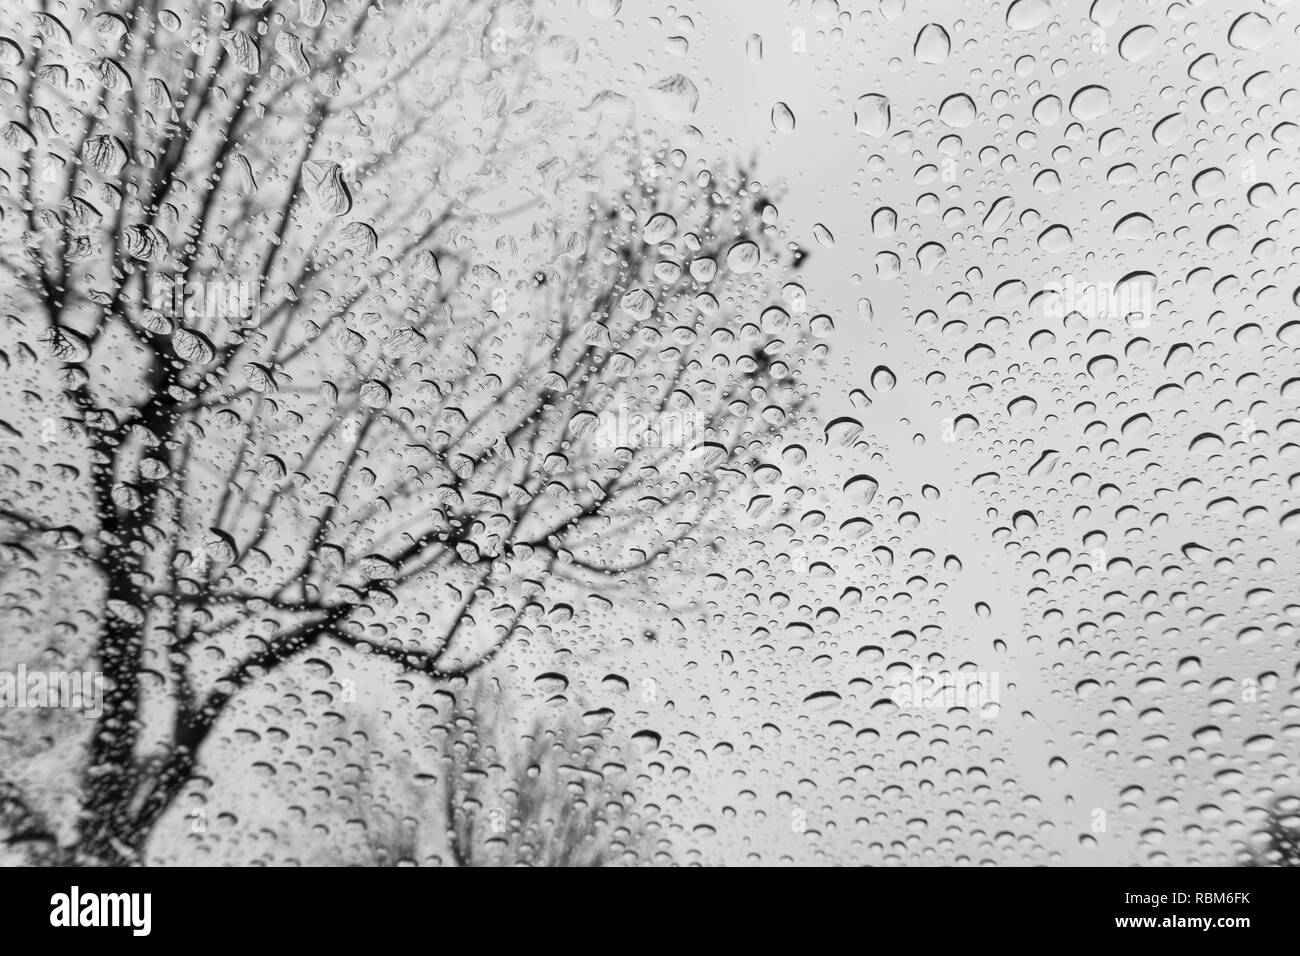 Gouttes de pluie sur le pare-brise, forme floue sur l'arrière-plan, noir & blanc Banque D'Images